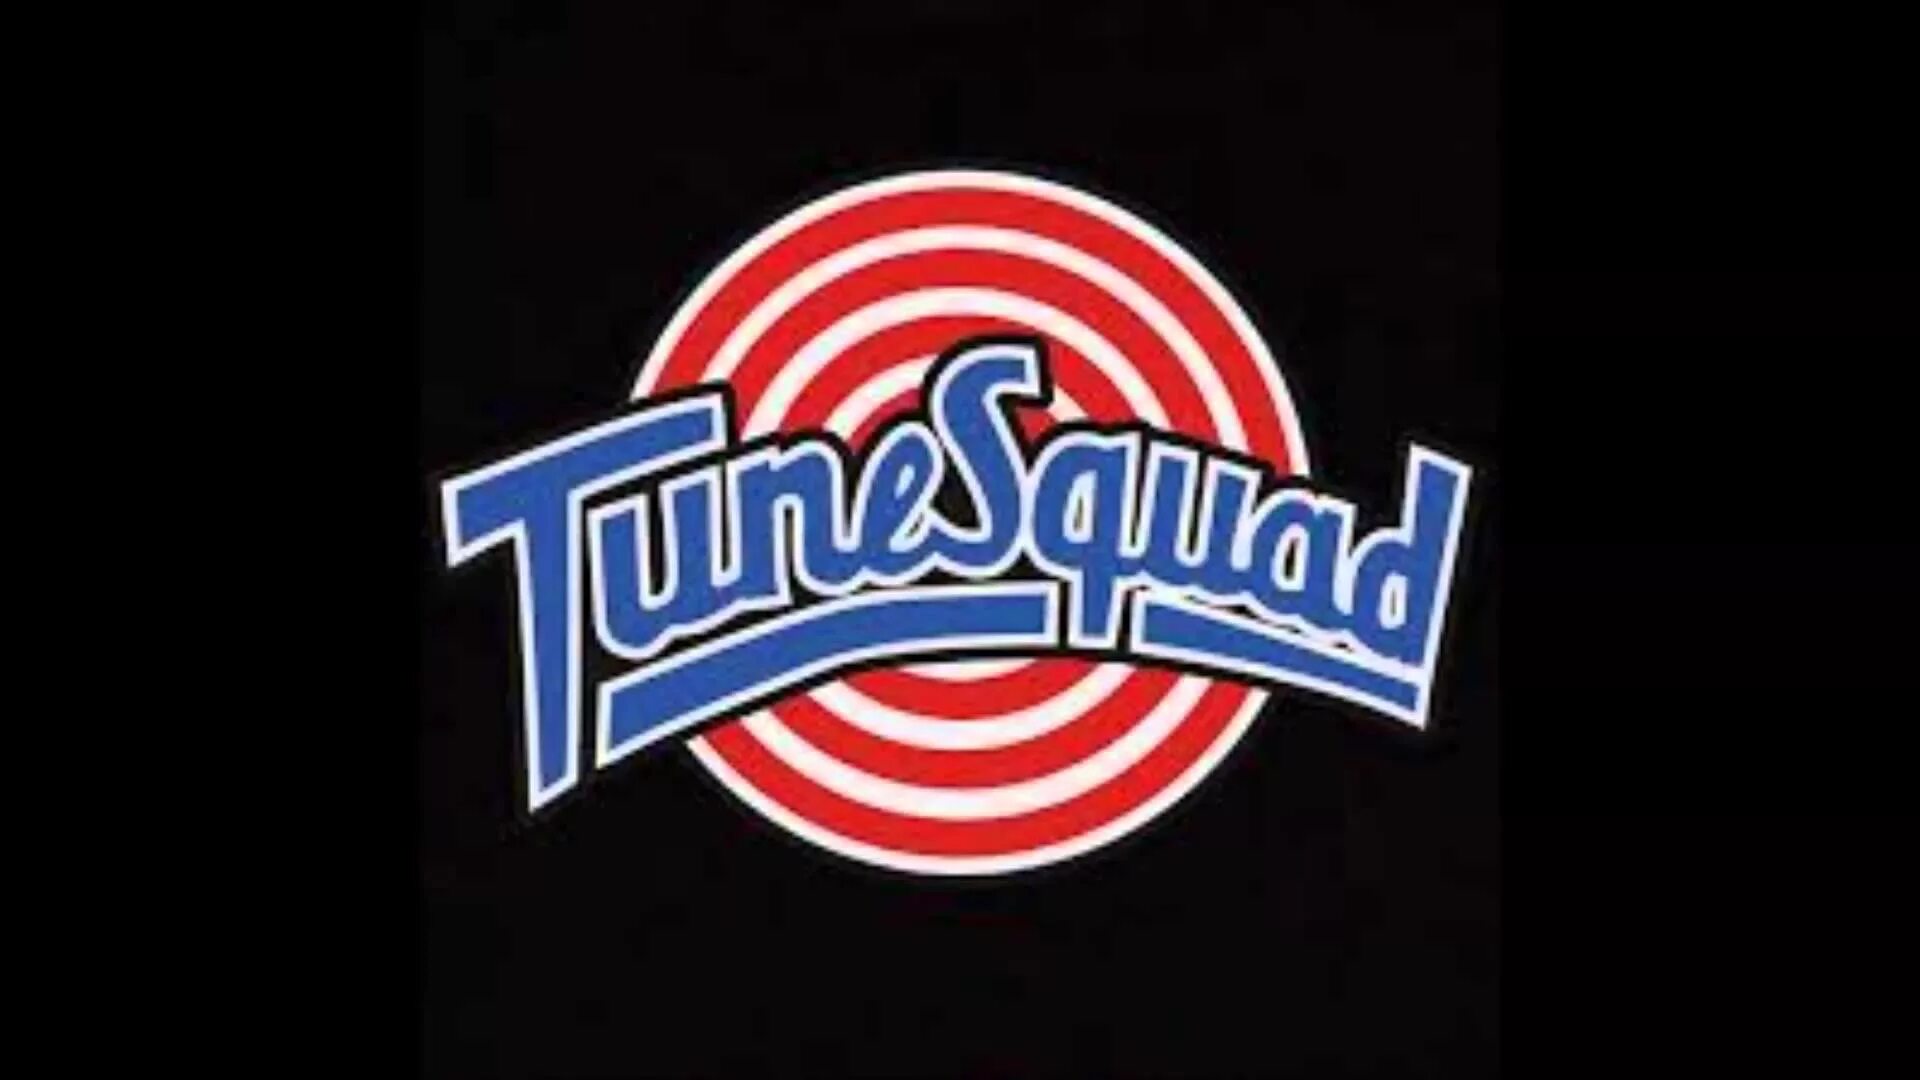 Tune retpath. TUNESQUAD. TUNESQUAD логотип. Tune Squad logo 2021. Космический джем.